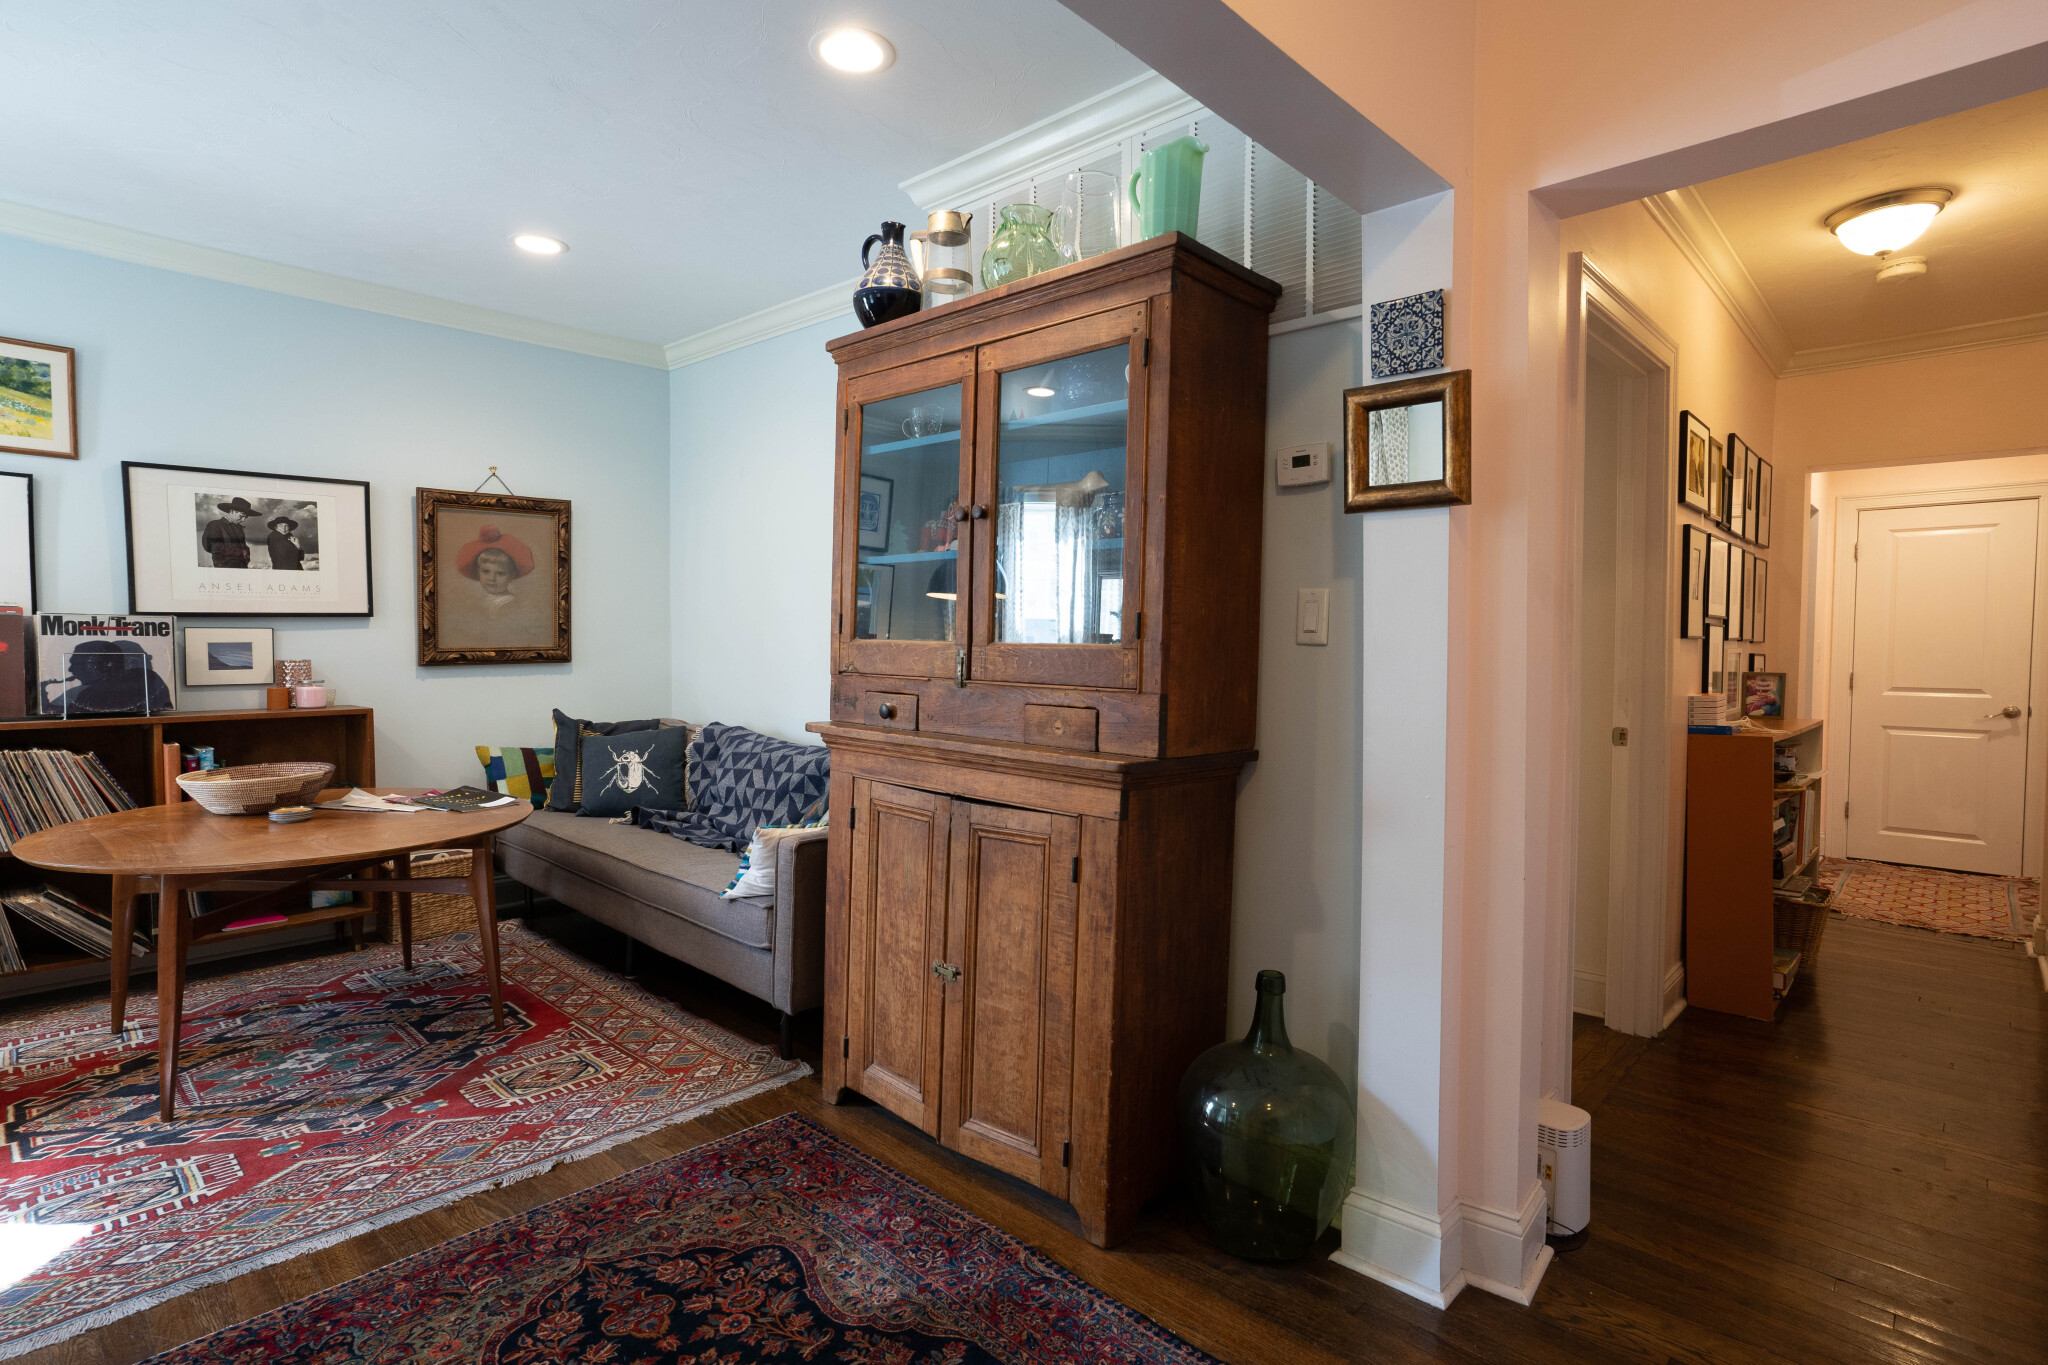 Photos of apartment on Stellman Rd.,Boston MA 02131